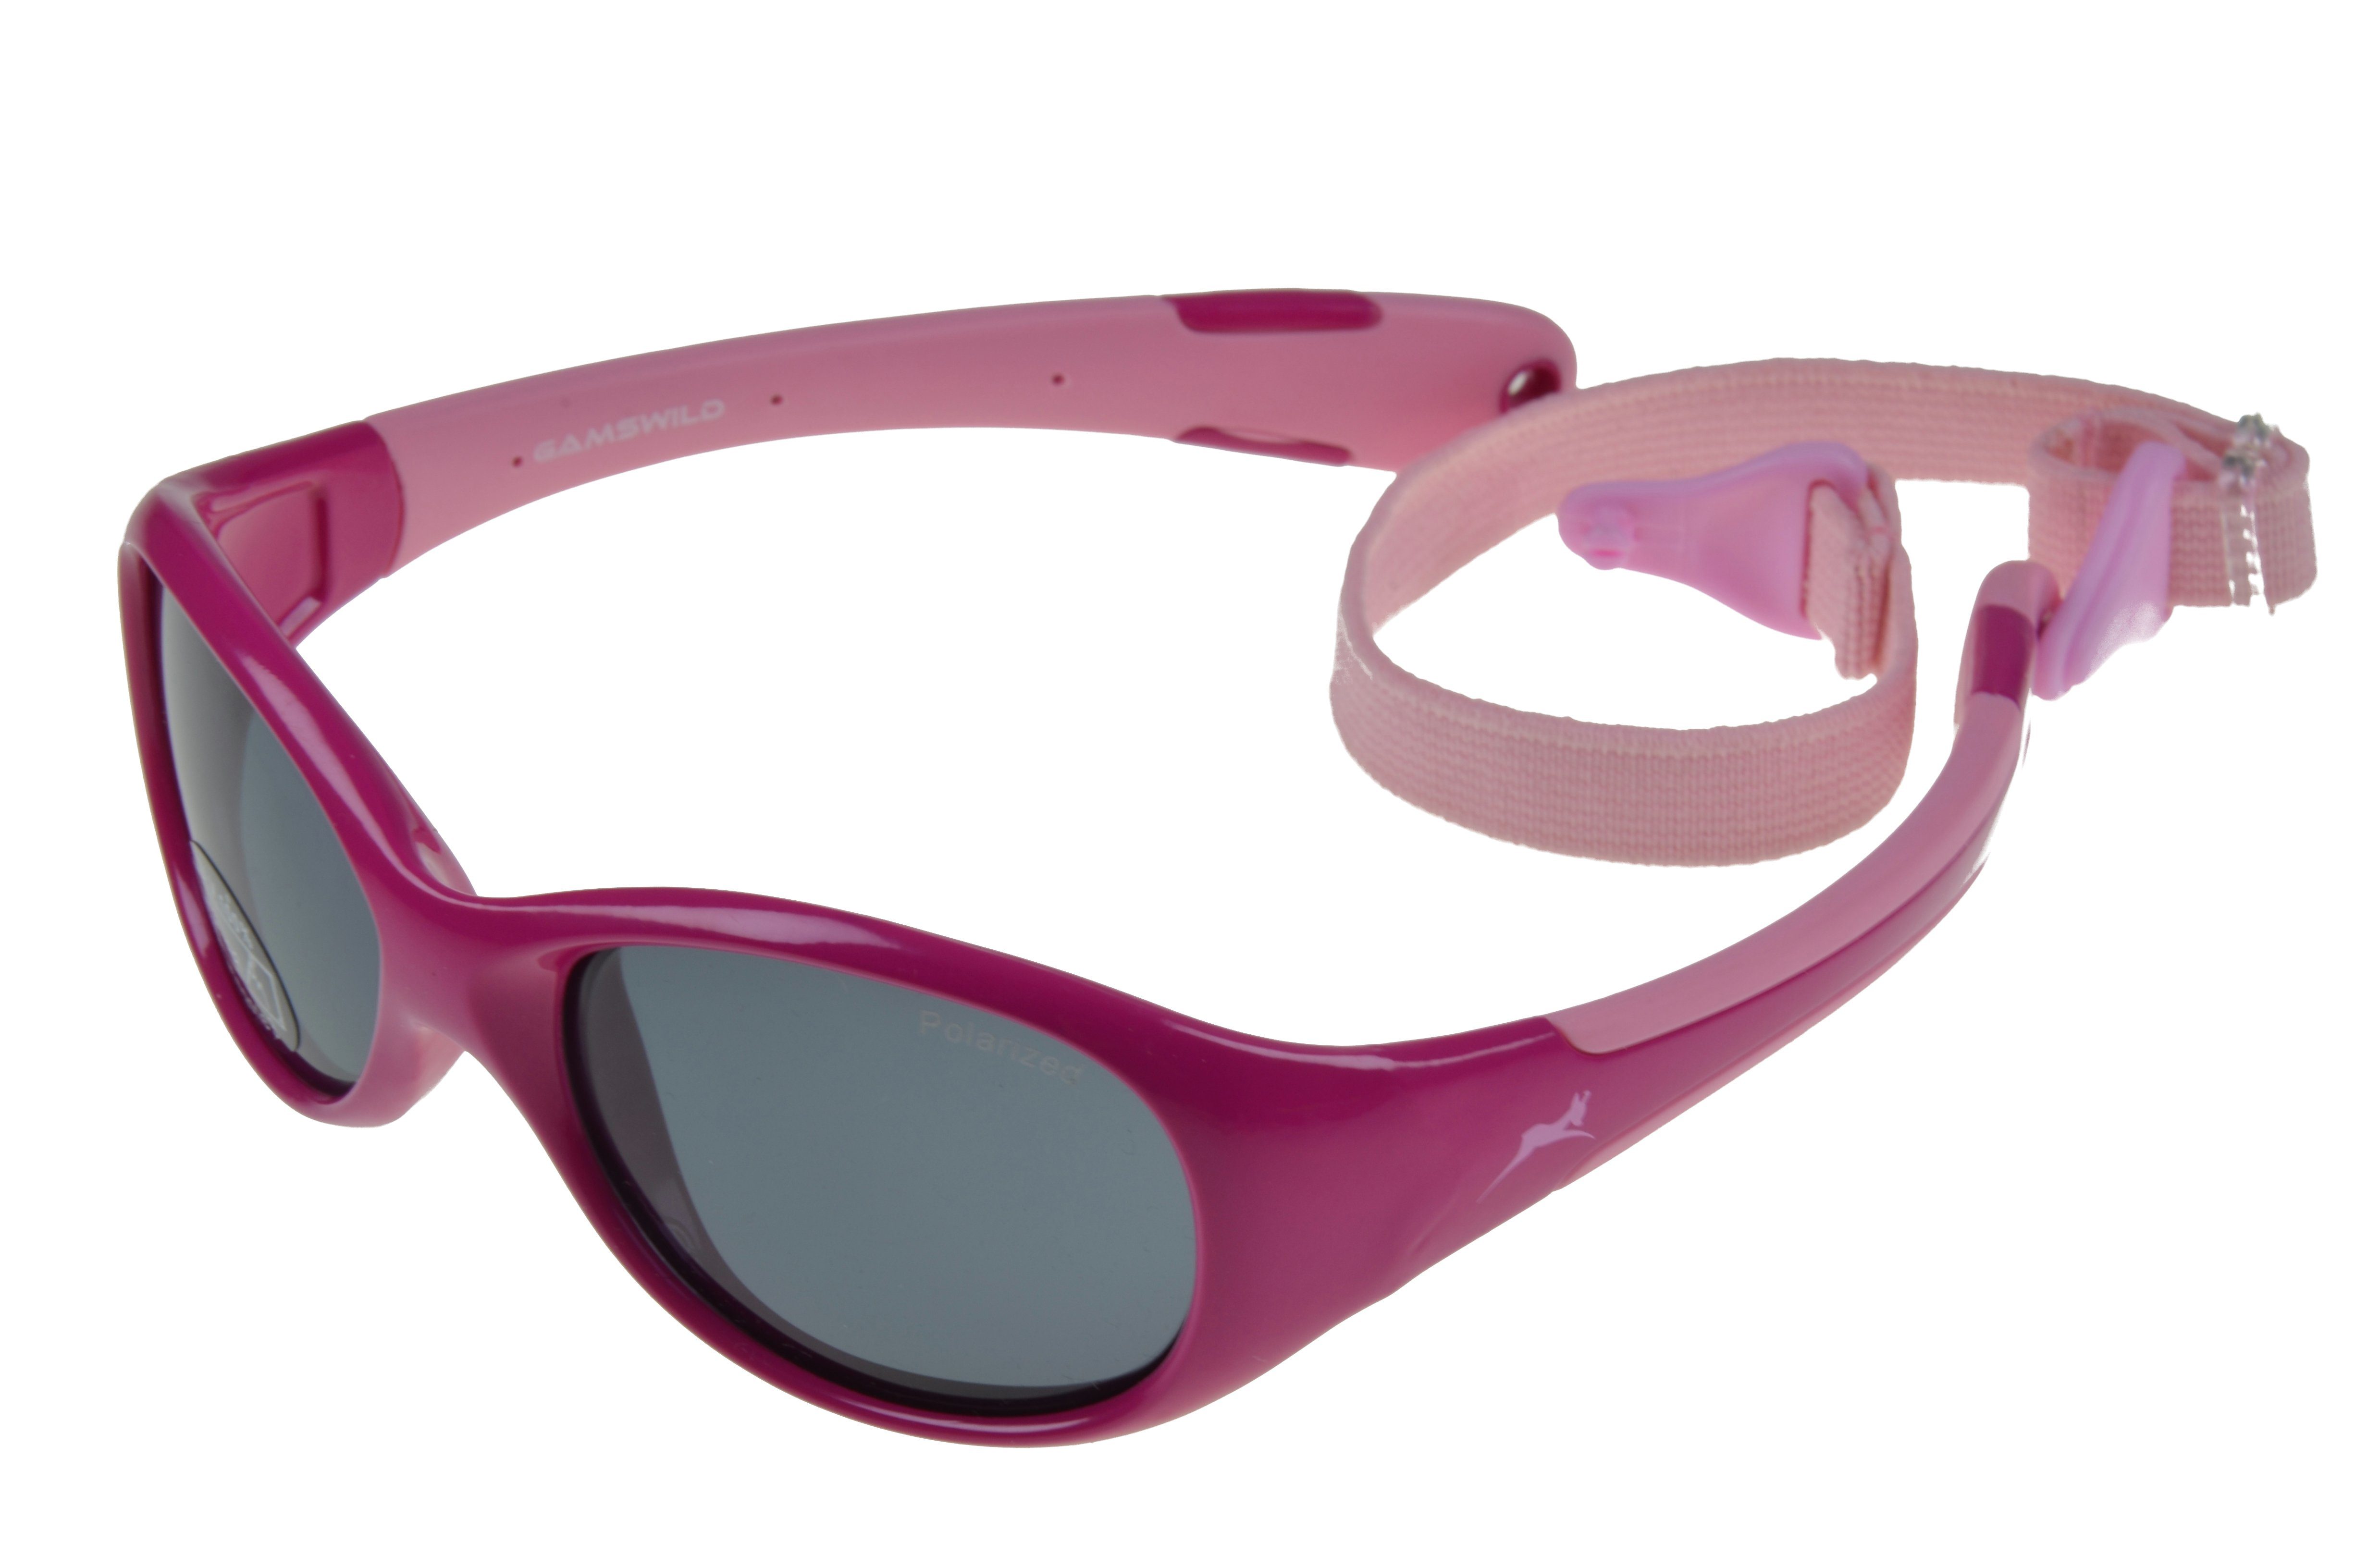 Gamswild Sonnenbrille WK5618 GAMSKIDS Kinderbrille 2-5 Jahre Kleinkindbrille Mädchen Jungen kids Unisex, rosa, grün, rot-orange incl. Brillenband pink-rosa